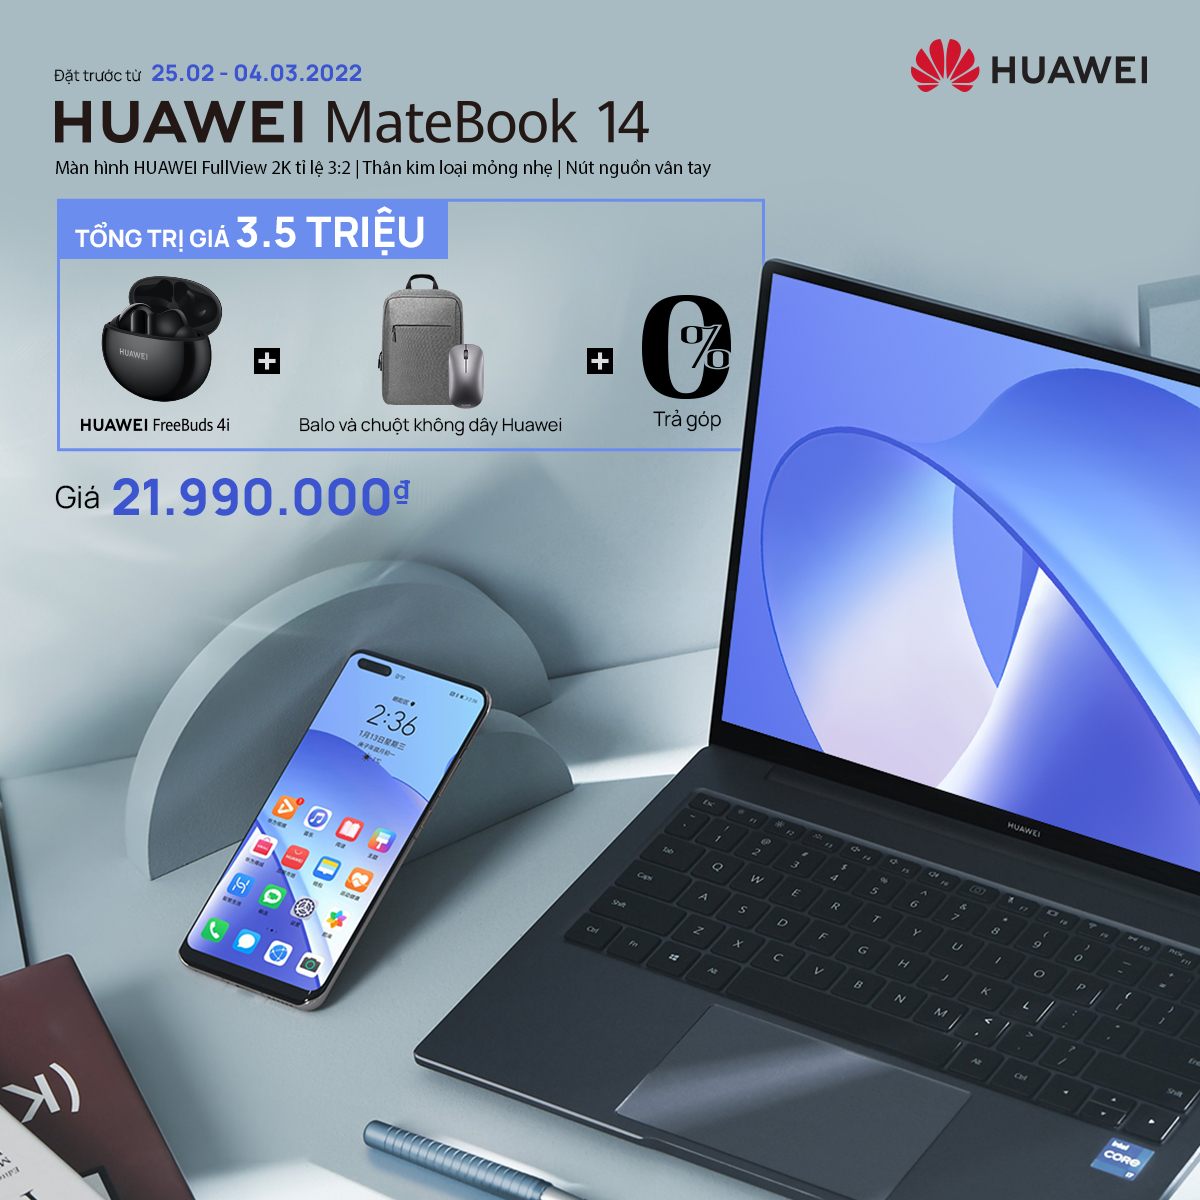 HUAWEI chính thức ra mắt laptop cao cấp đa năng MateBook 14 với thân máy kim loại